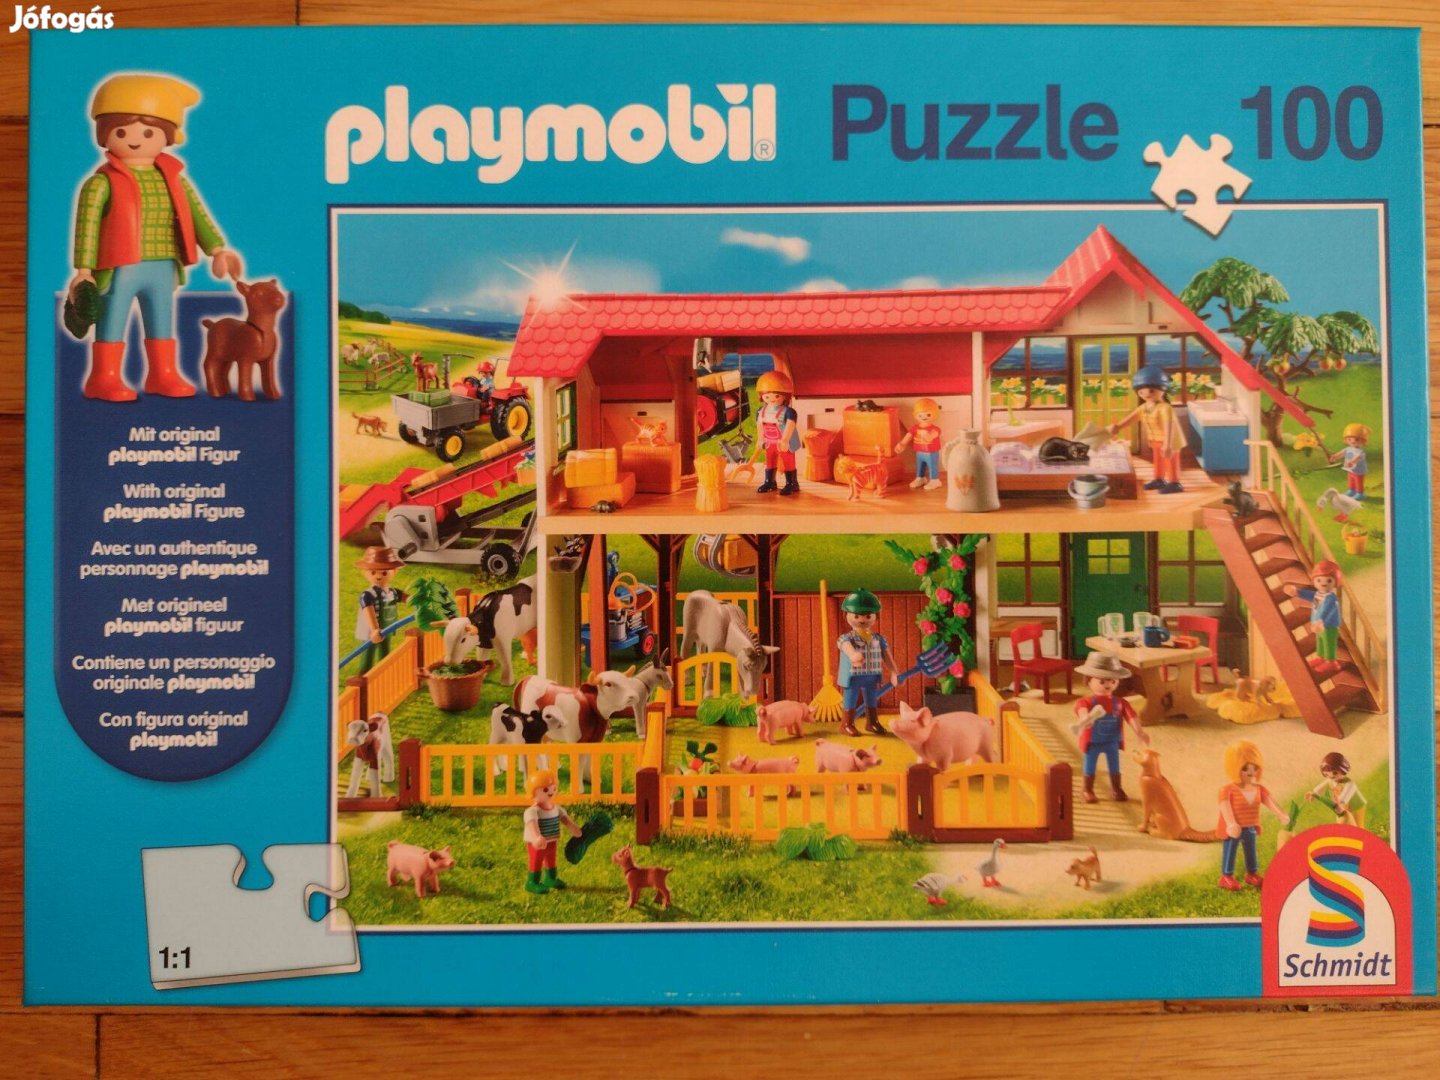 Schmidt Spiele (56914) - Playmobil - 100 pieces puzzle